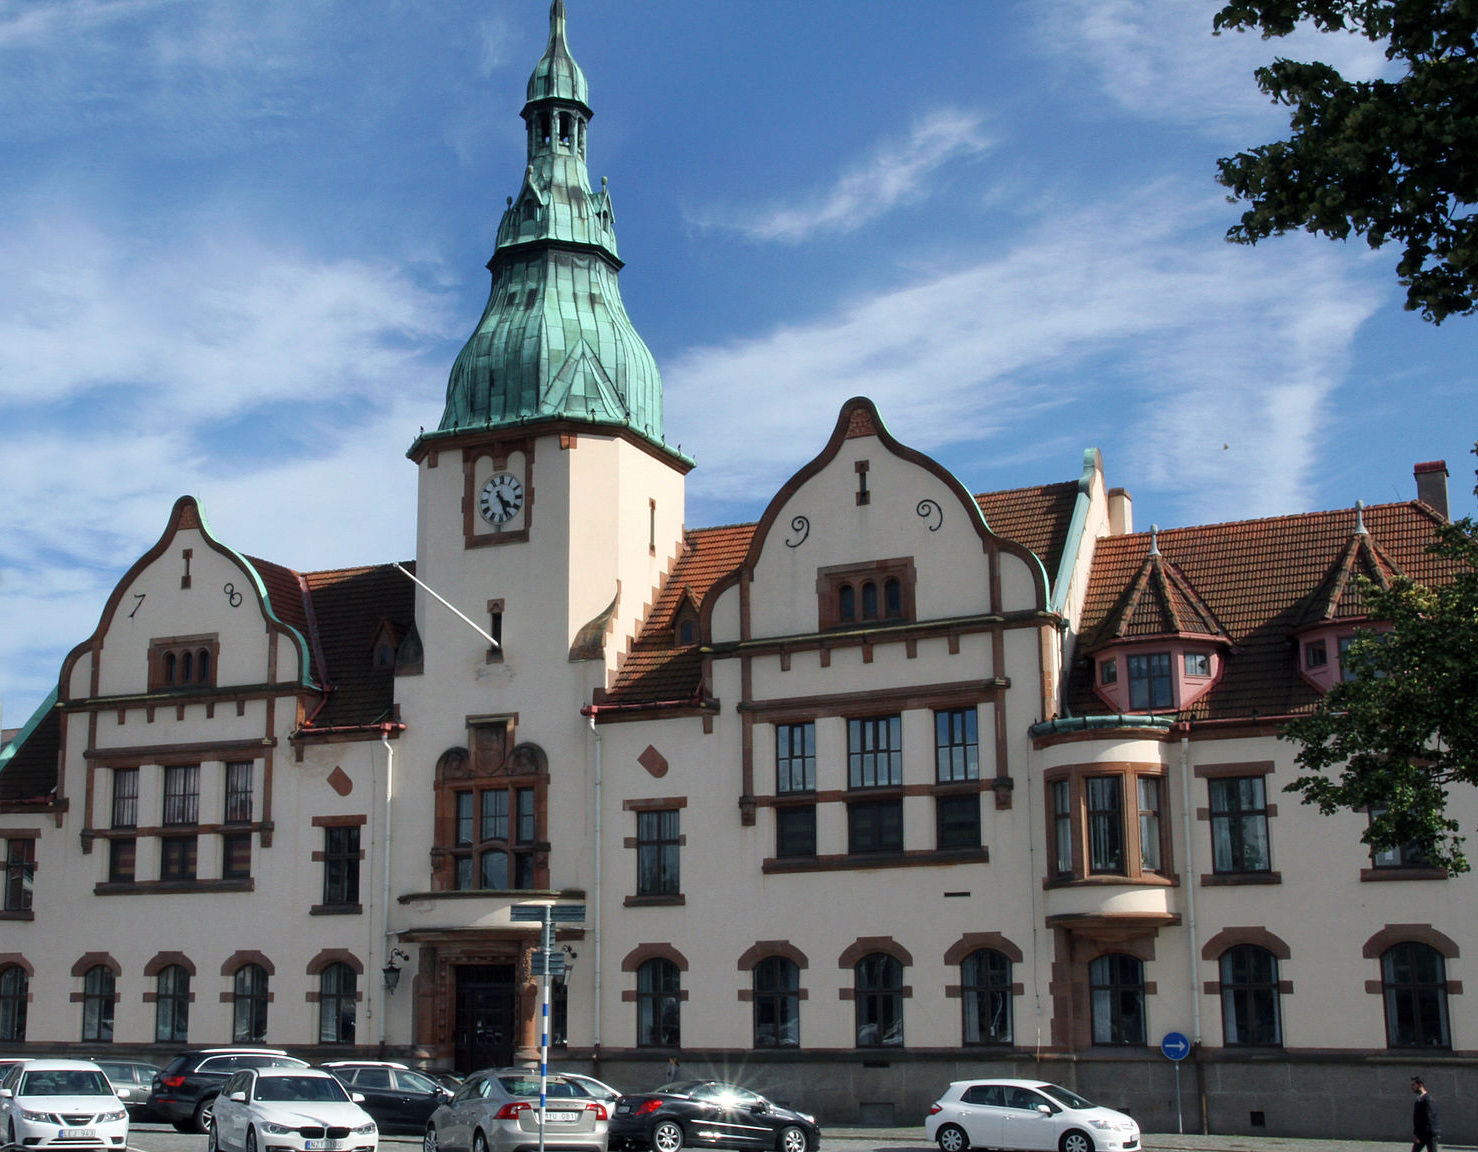 Är rådhuset i Karlshamn Sveriges vackraste byggnad genom tiderna?